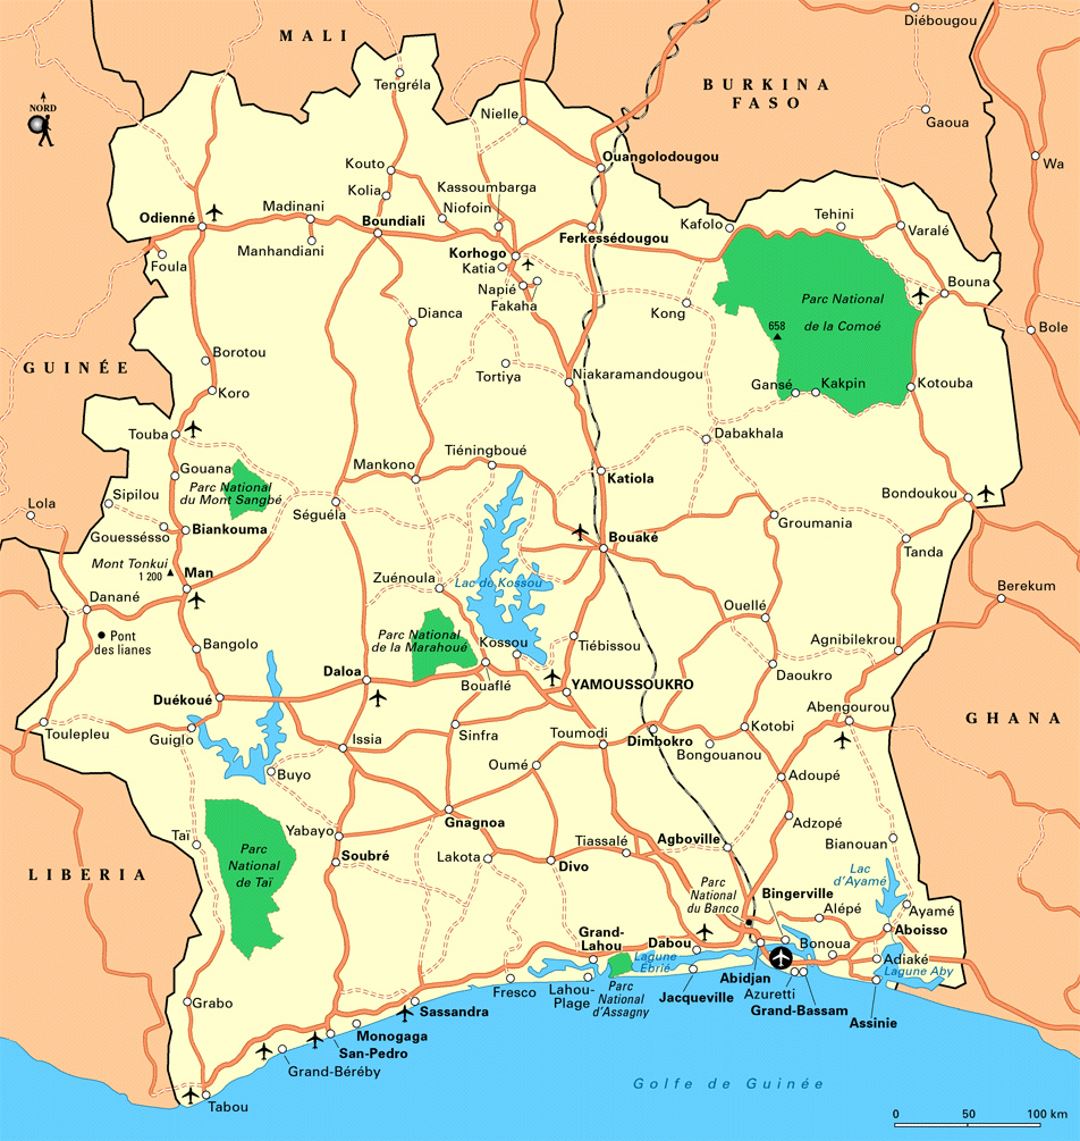 Детальная карта Кот-д'Ивуара с дорогами, железными дорогами, городами, аэропортами и национальными парками